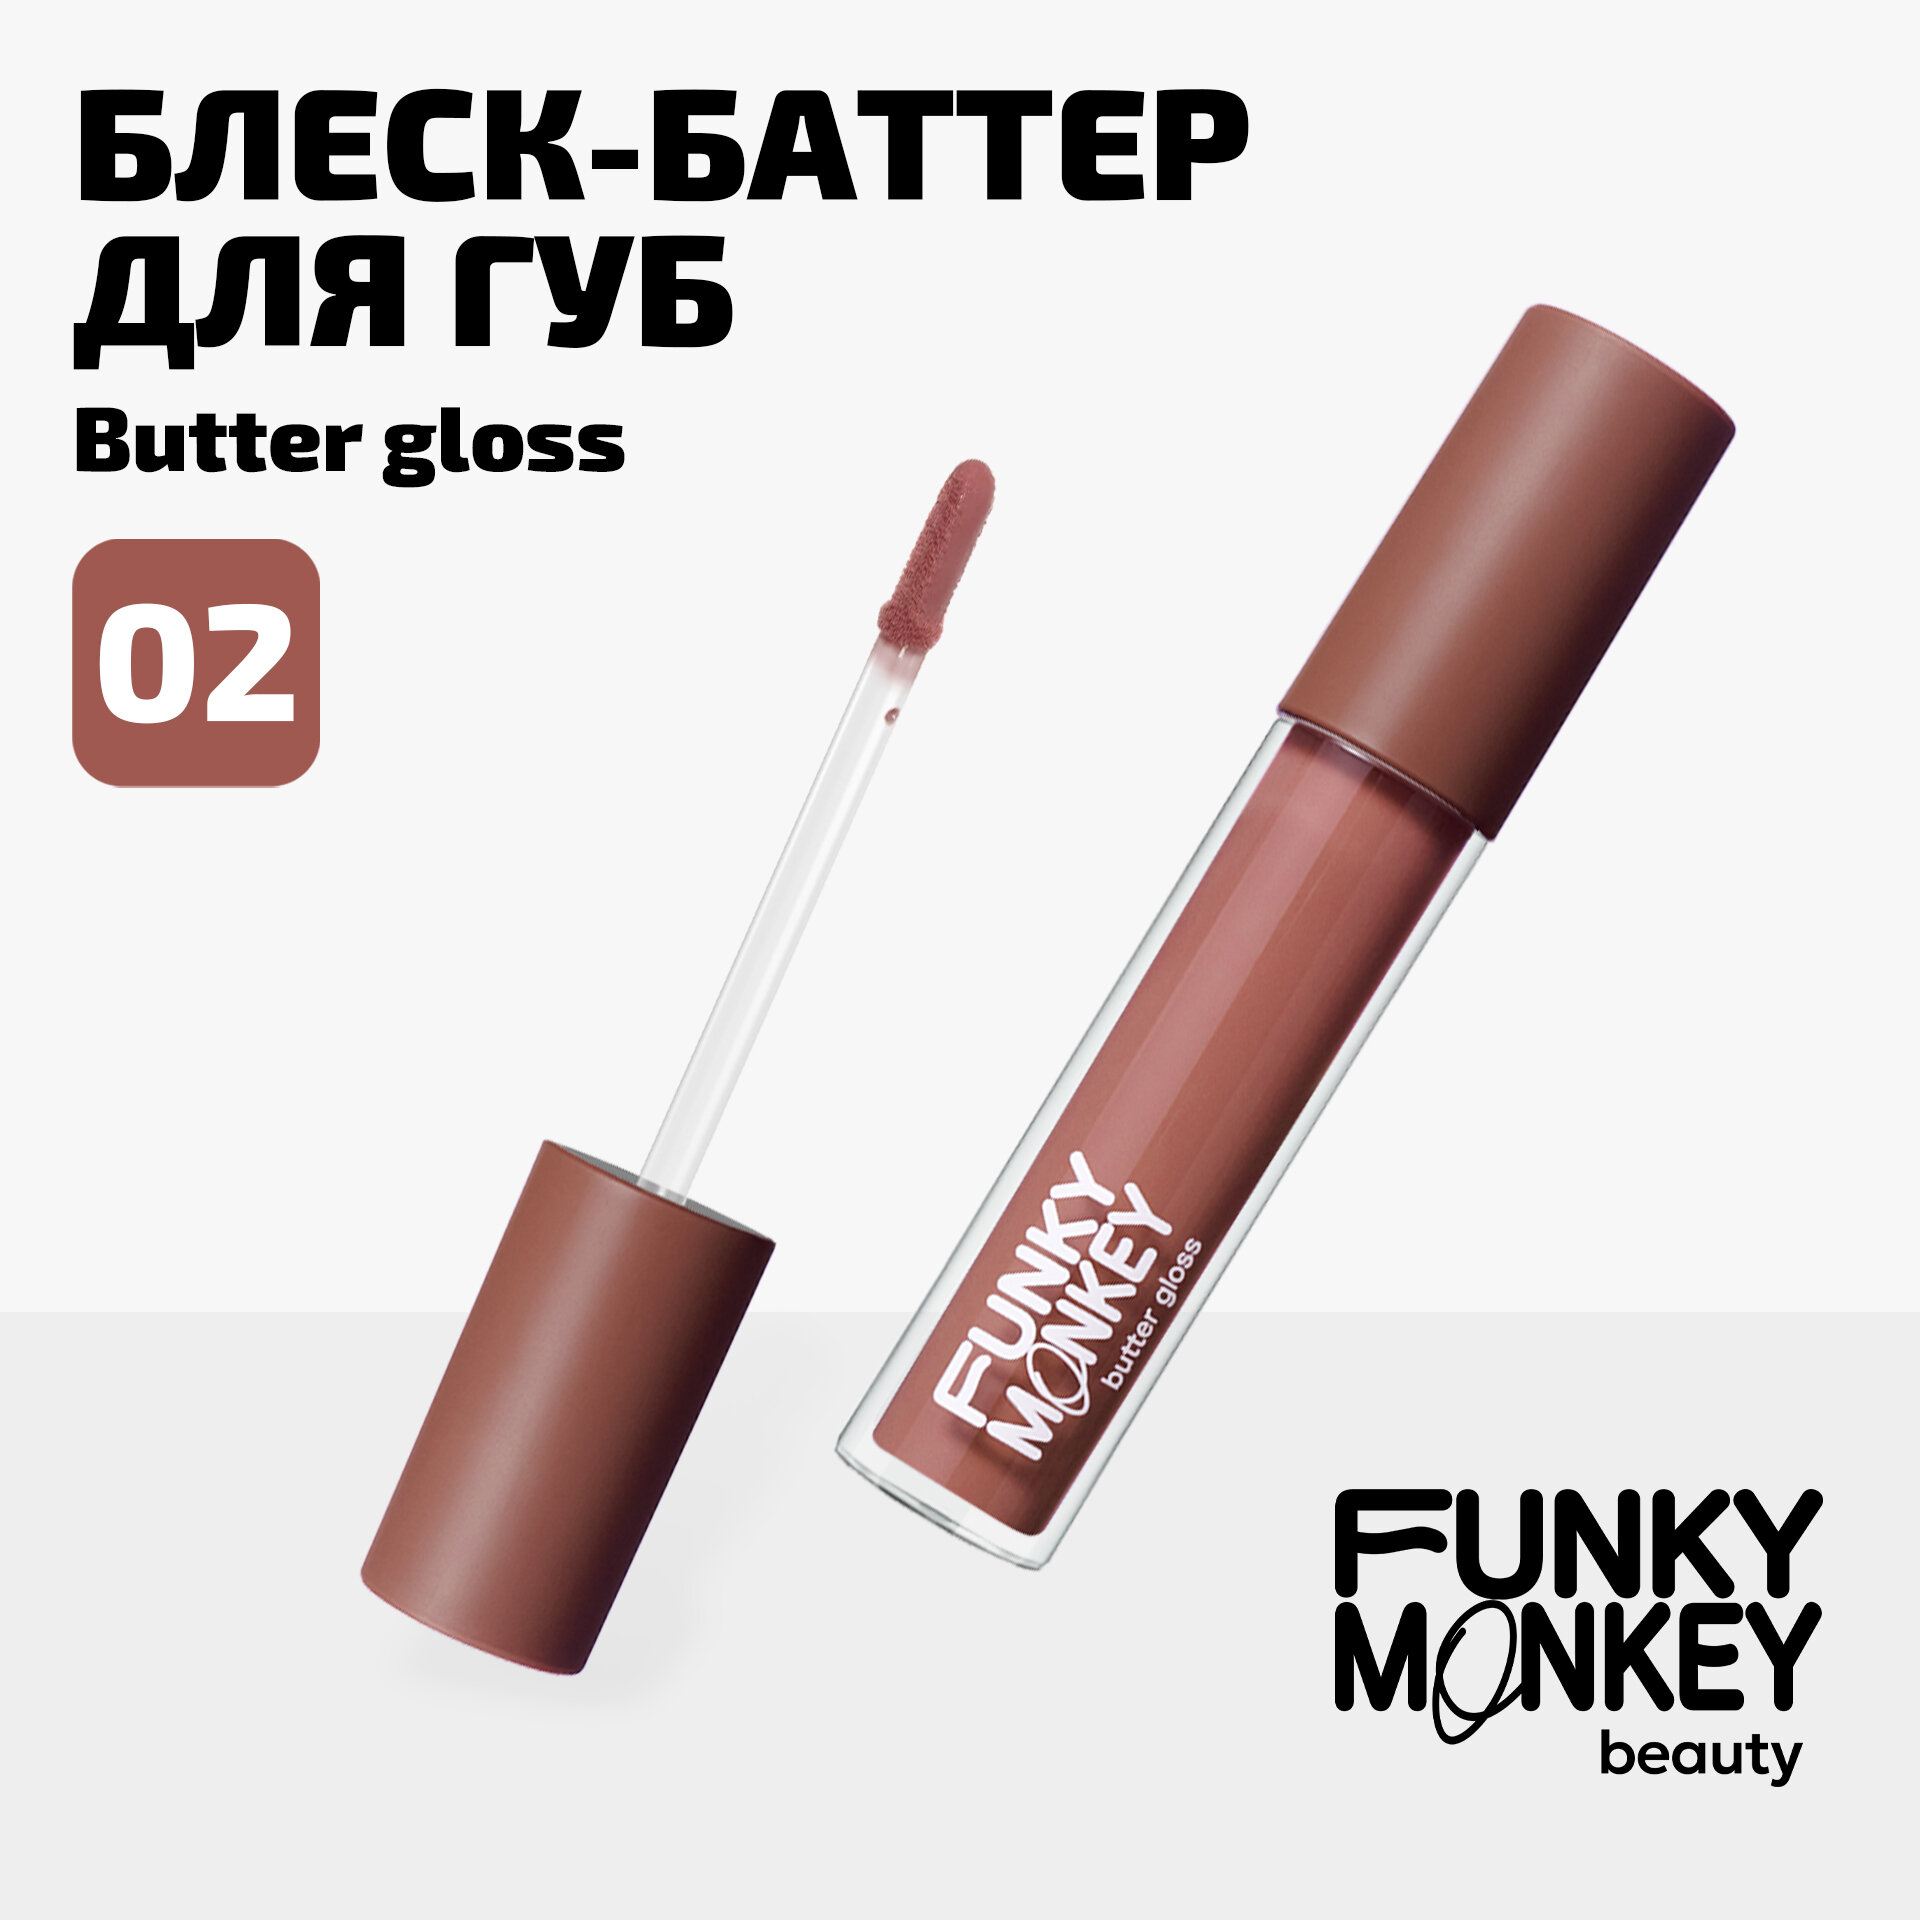 Funky Monkey Блеск - баттер для губ Butter gloss тон 02